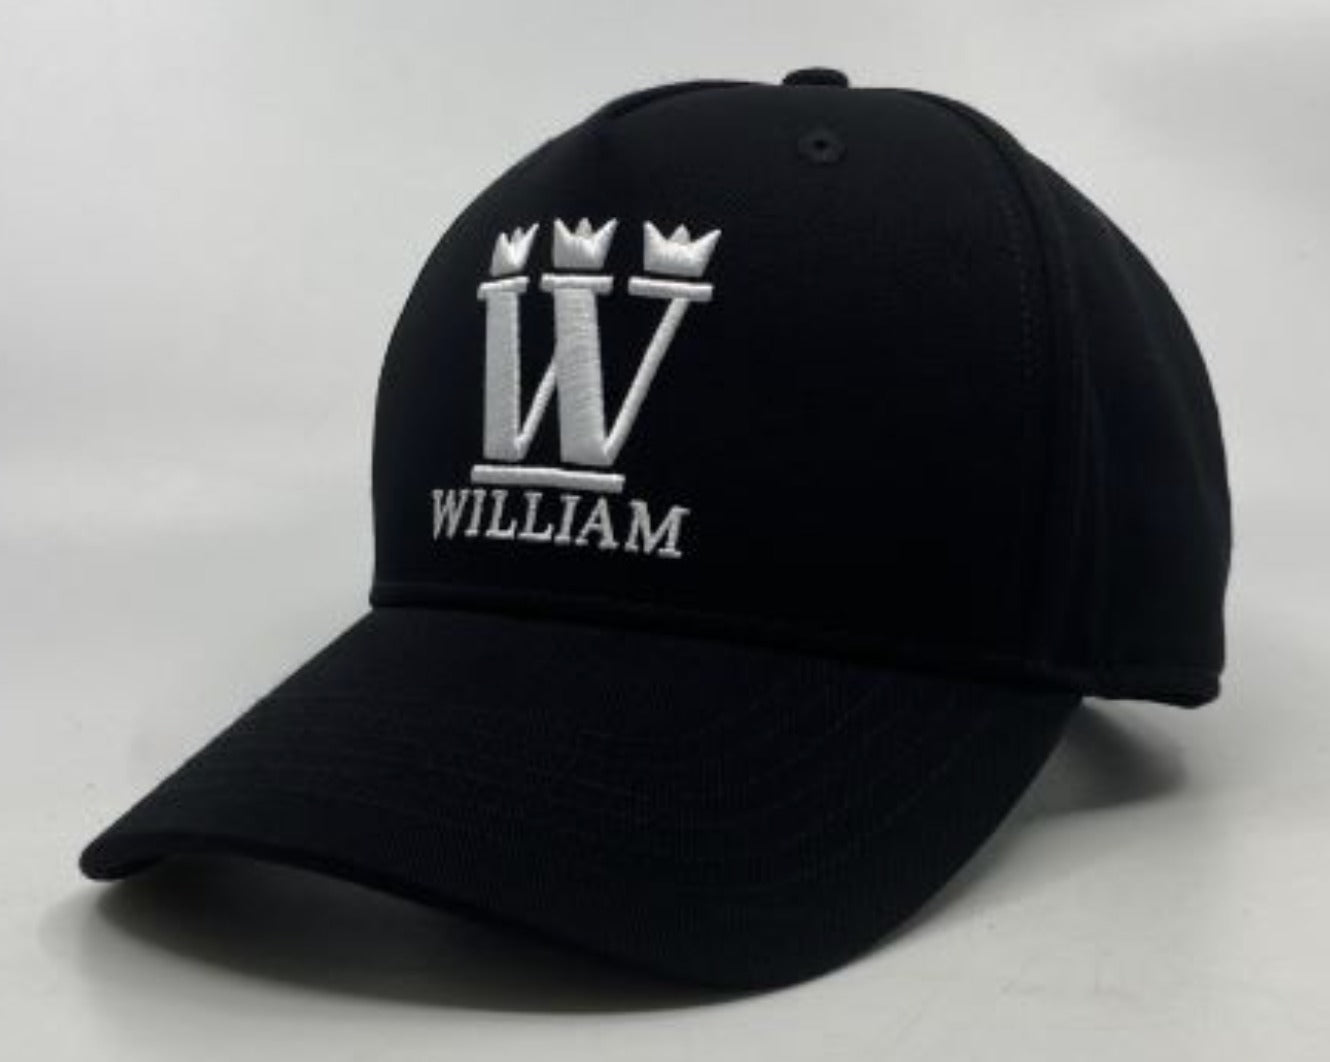 WILLIAM Cap Black